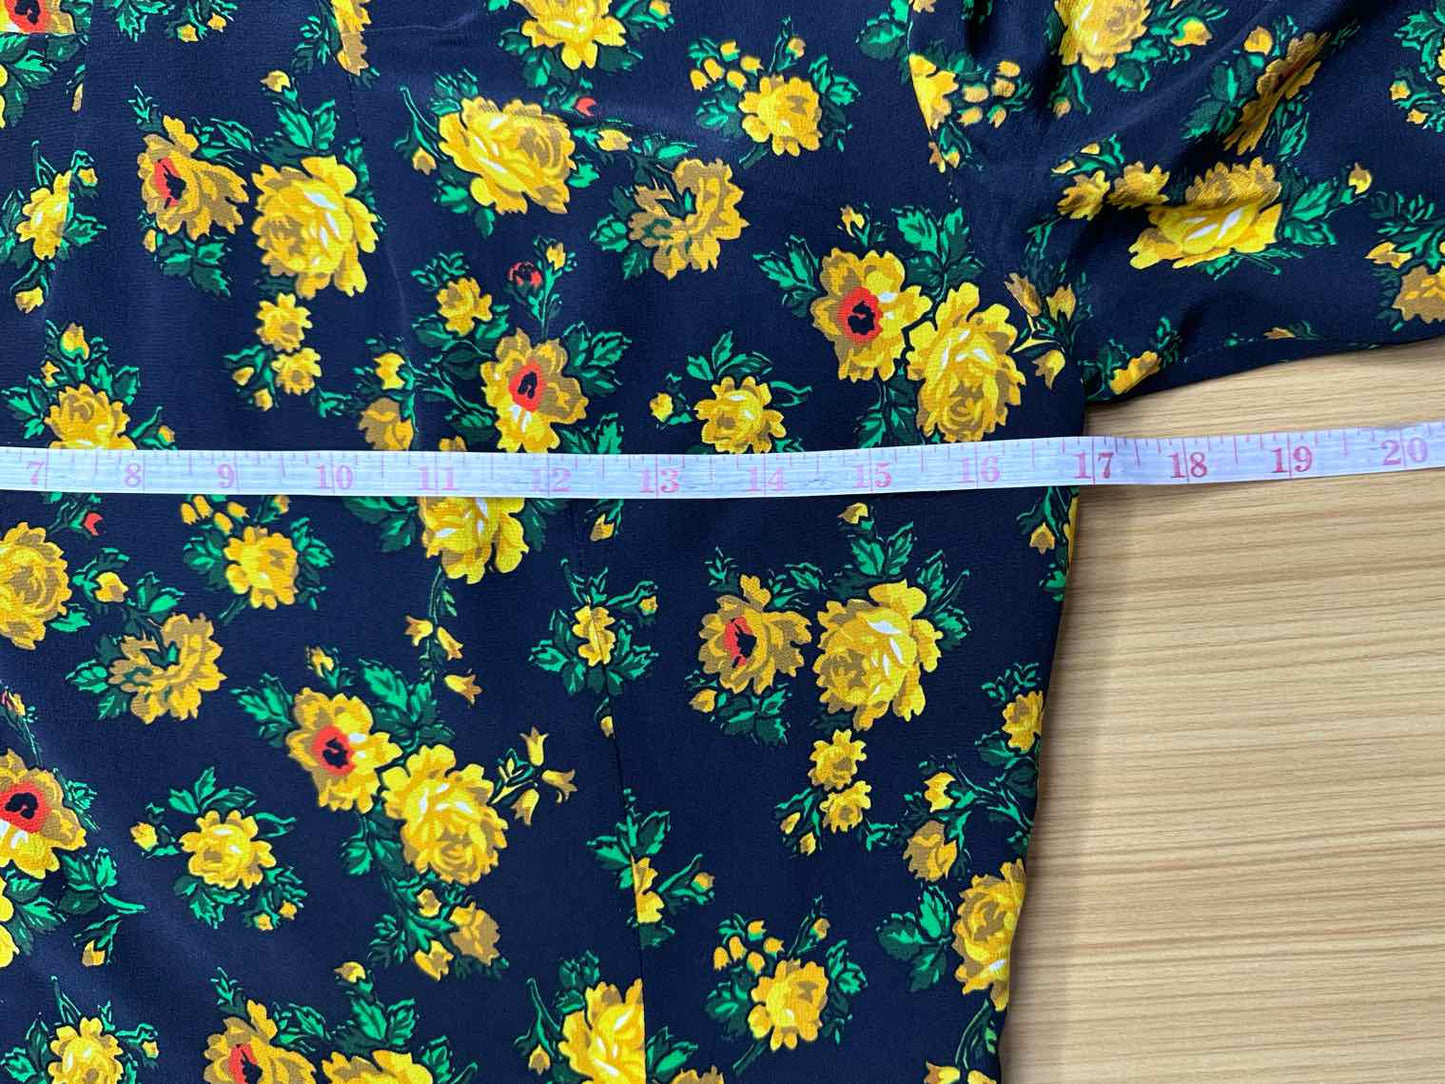 CLAUDIE PIERLOT Black Floral Silk Print RISMAH Dress Size S